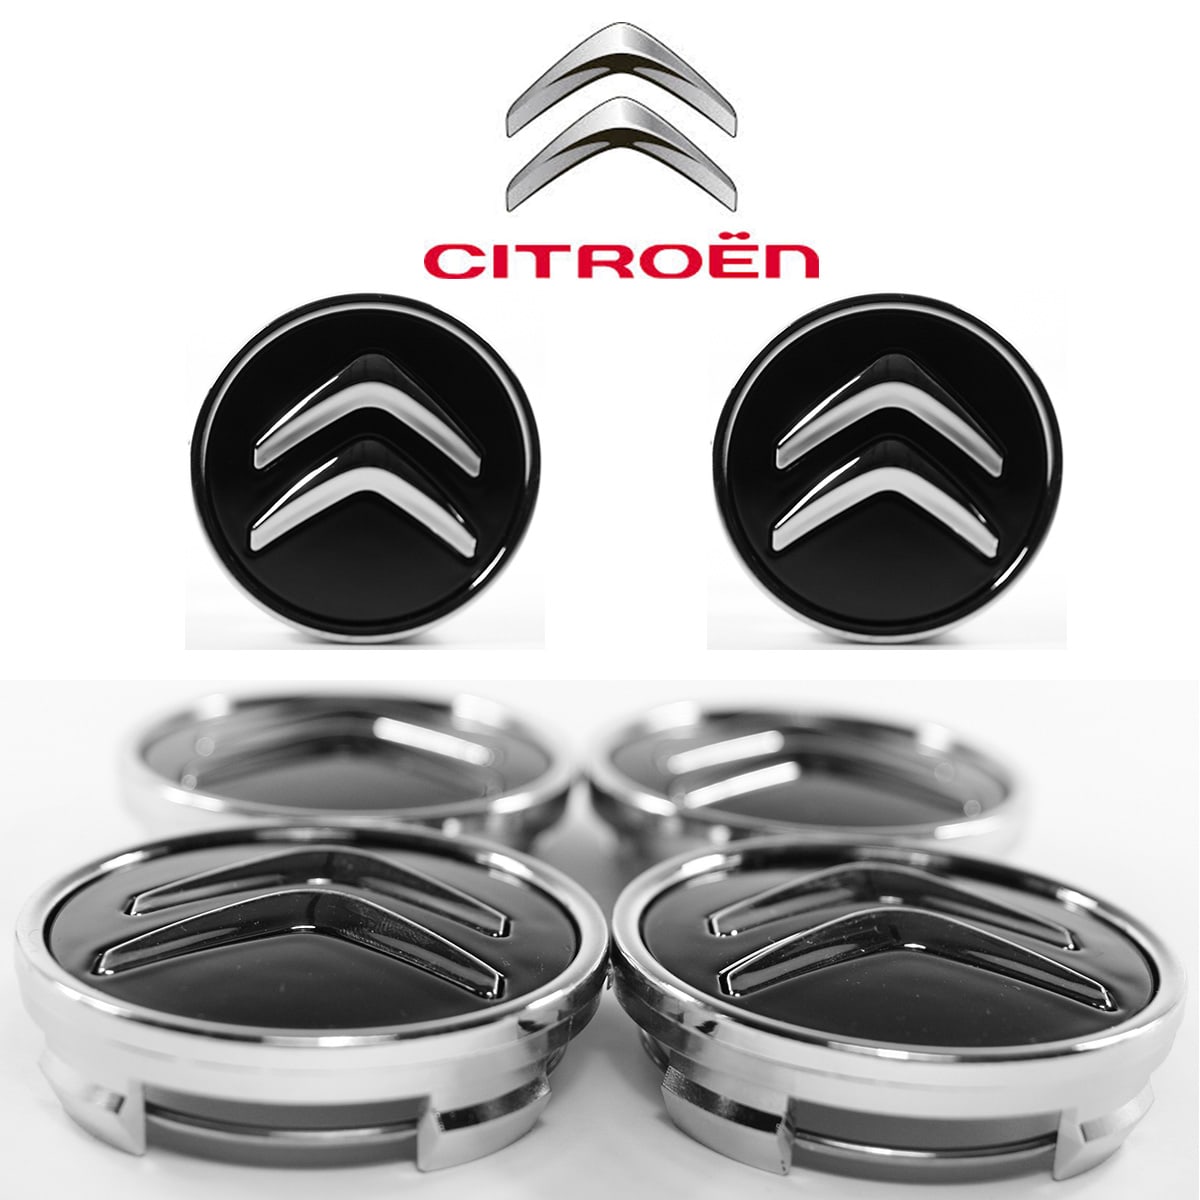 Lot de 4 caches moyeux centre de roue Citroën logo chrome fond noir diamètre 60mm.